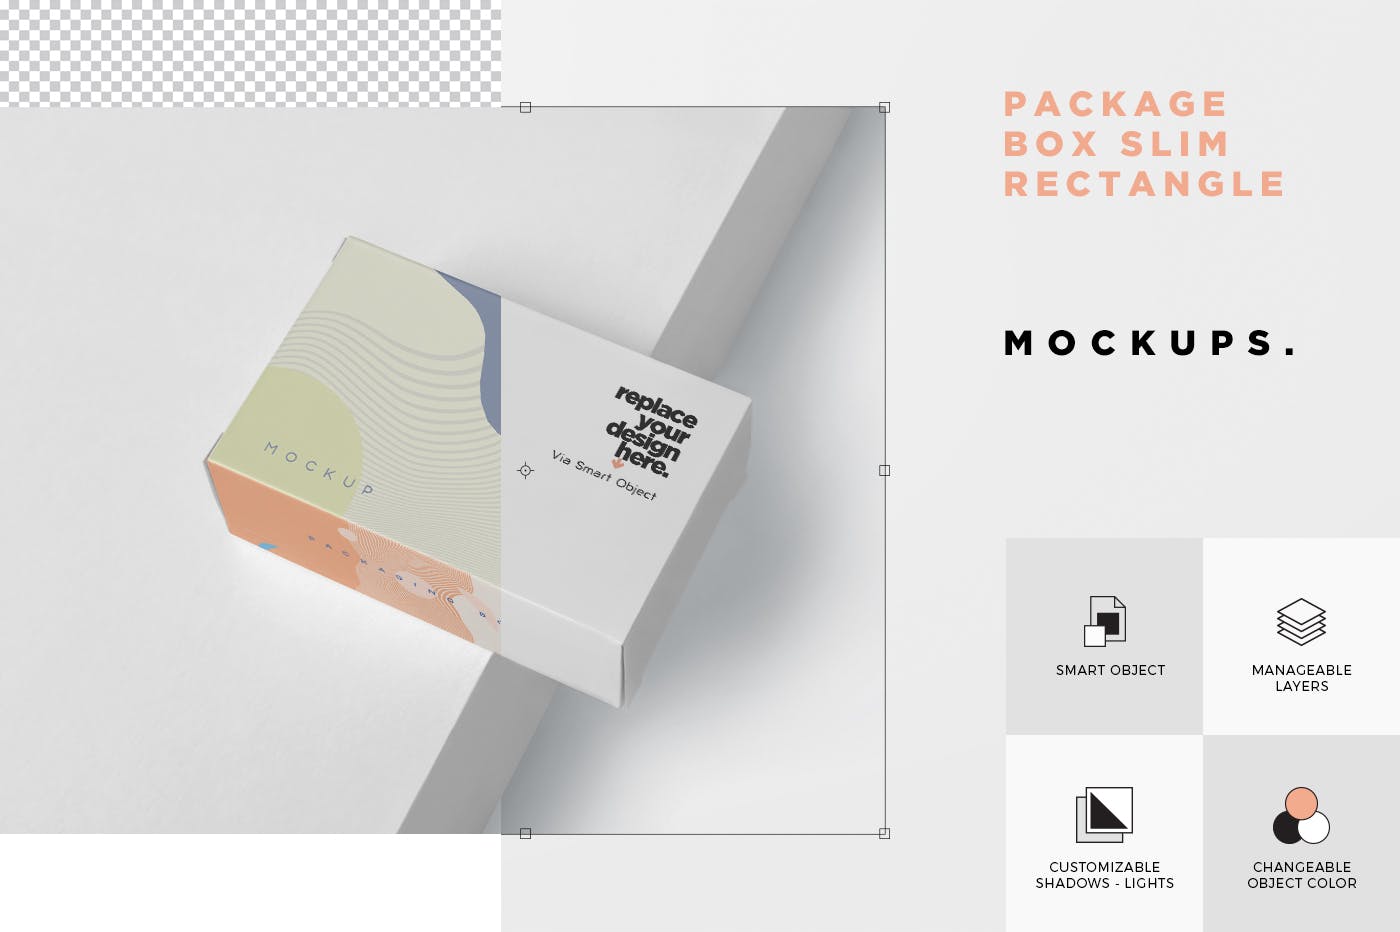 扁平矩形产品包装盒效果图蚂蚁素材精选 Package Box Mockup – Slim Rectangle Shape插图(6)